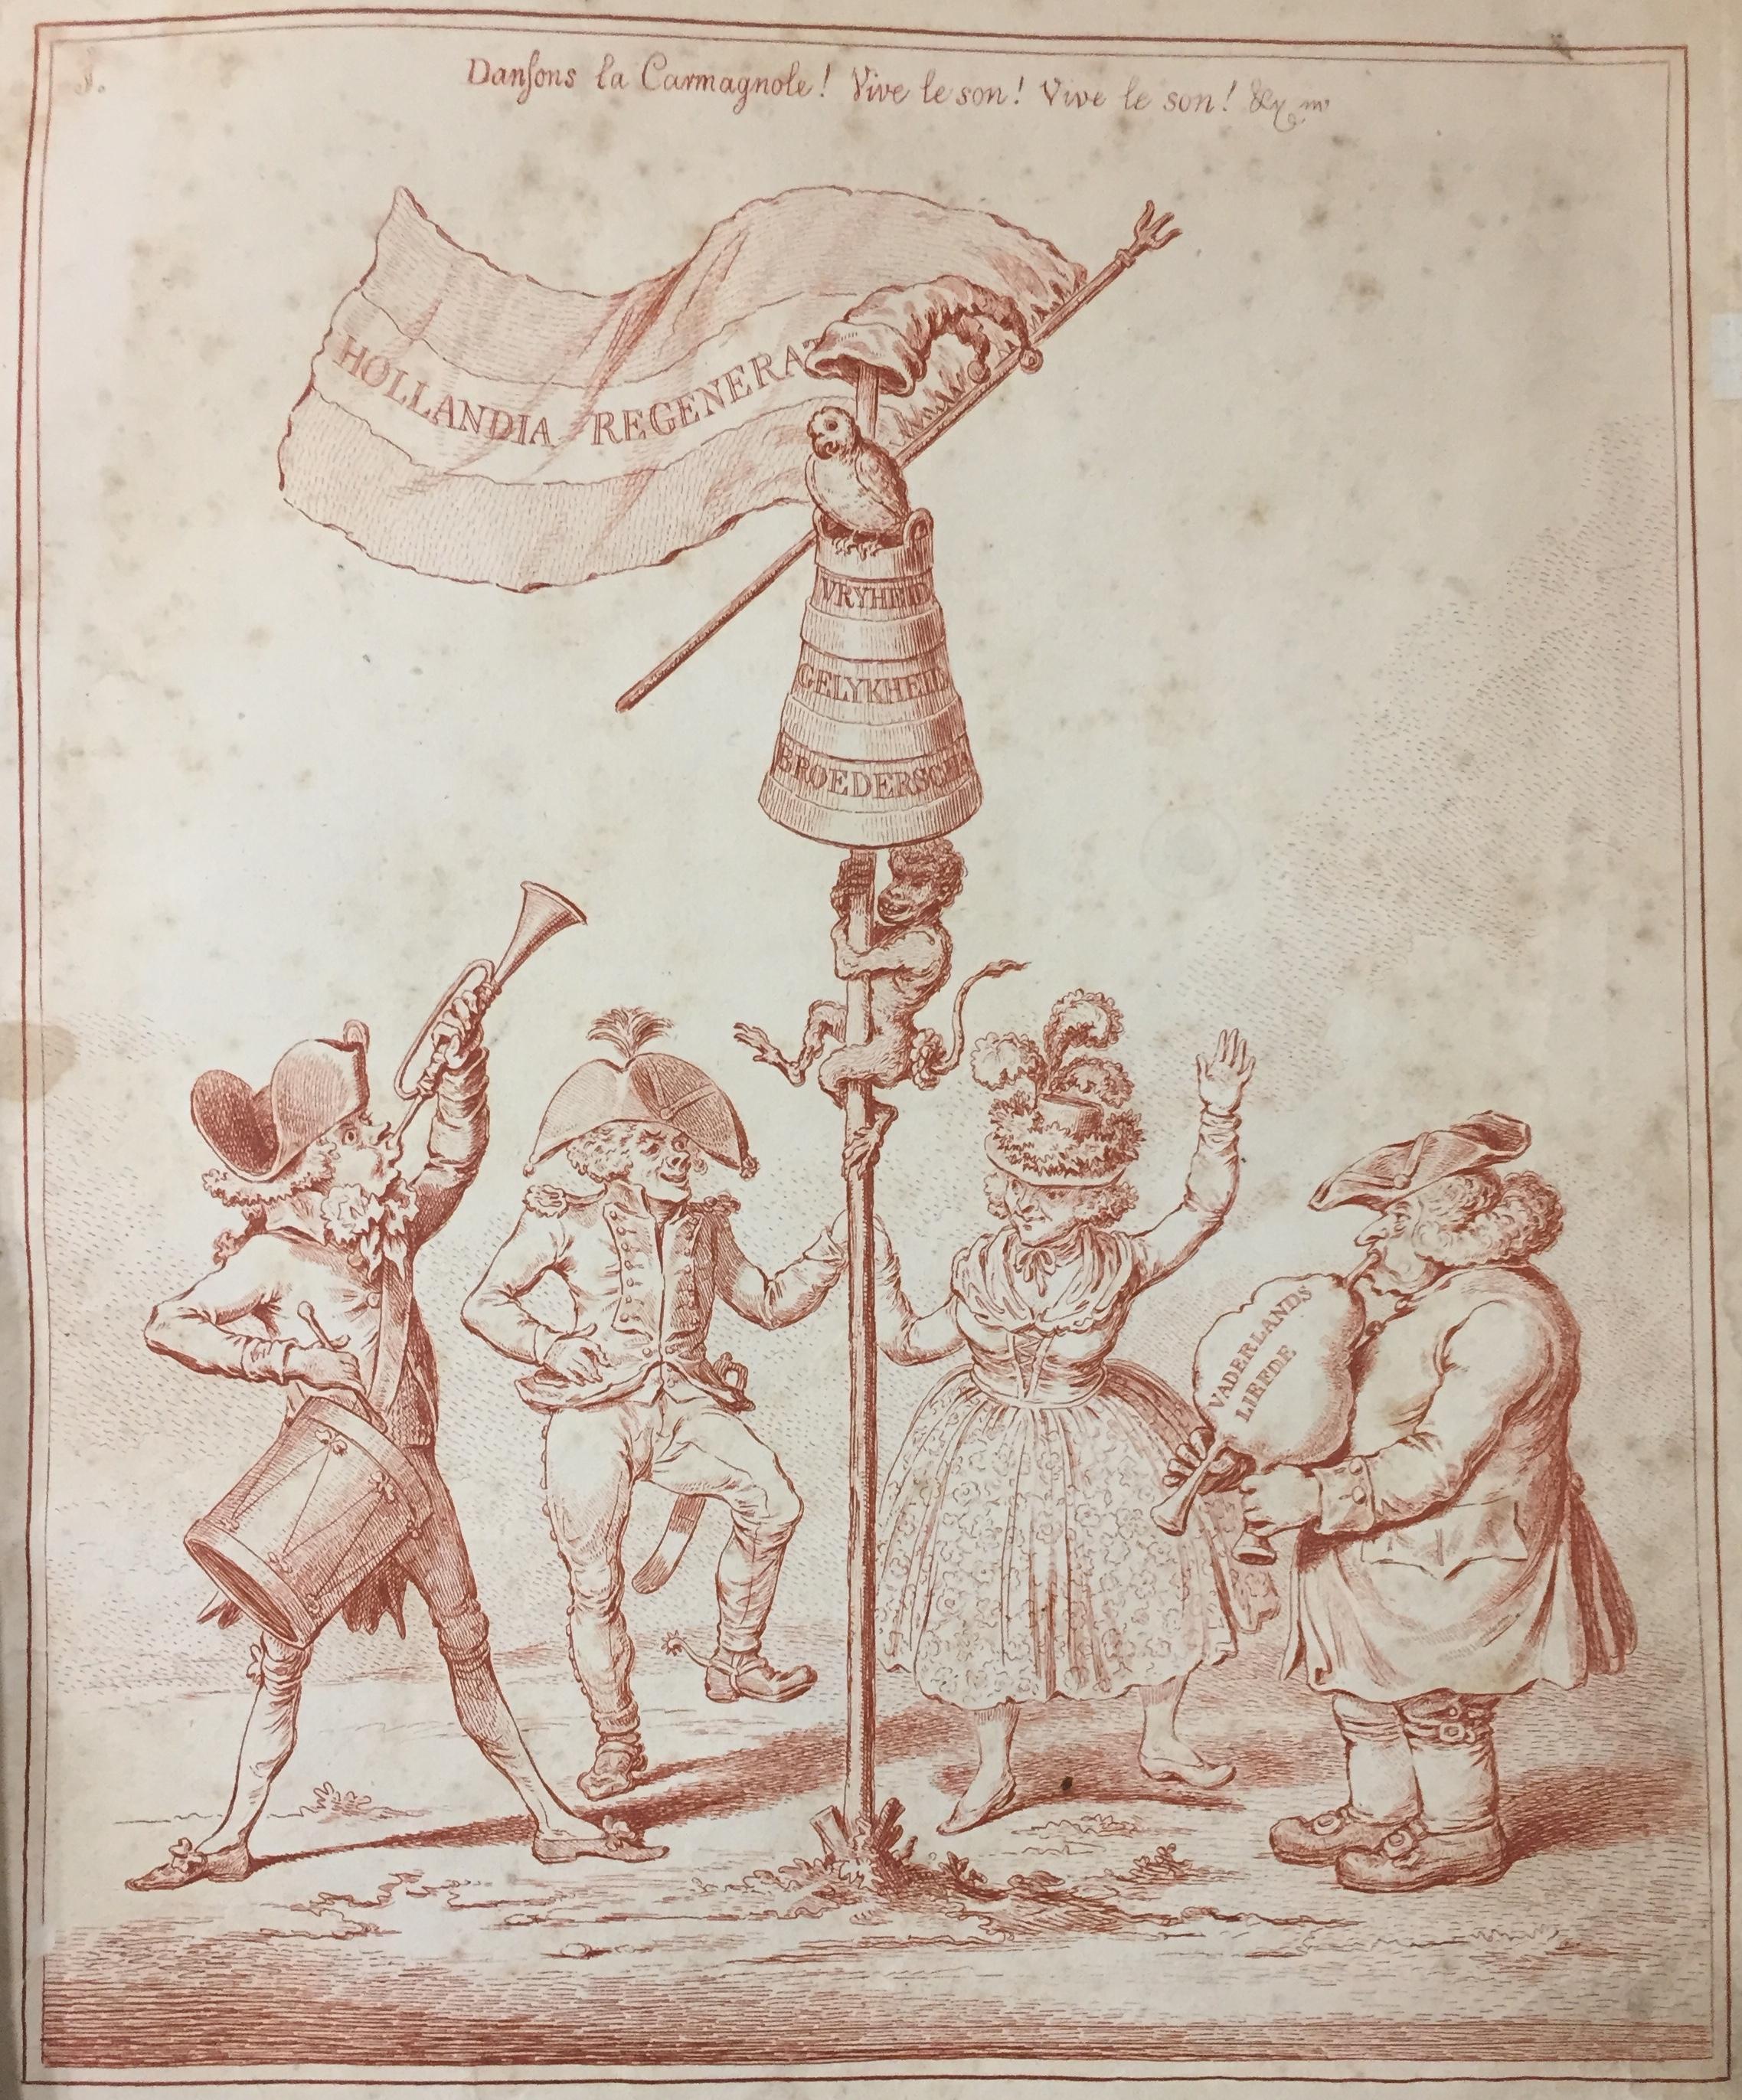 Hollandia Regenerata - Rare Original Illustrated Pamphlet - 1795 For Sale 1